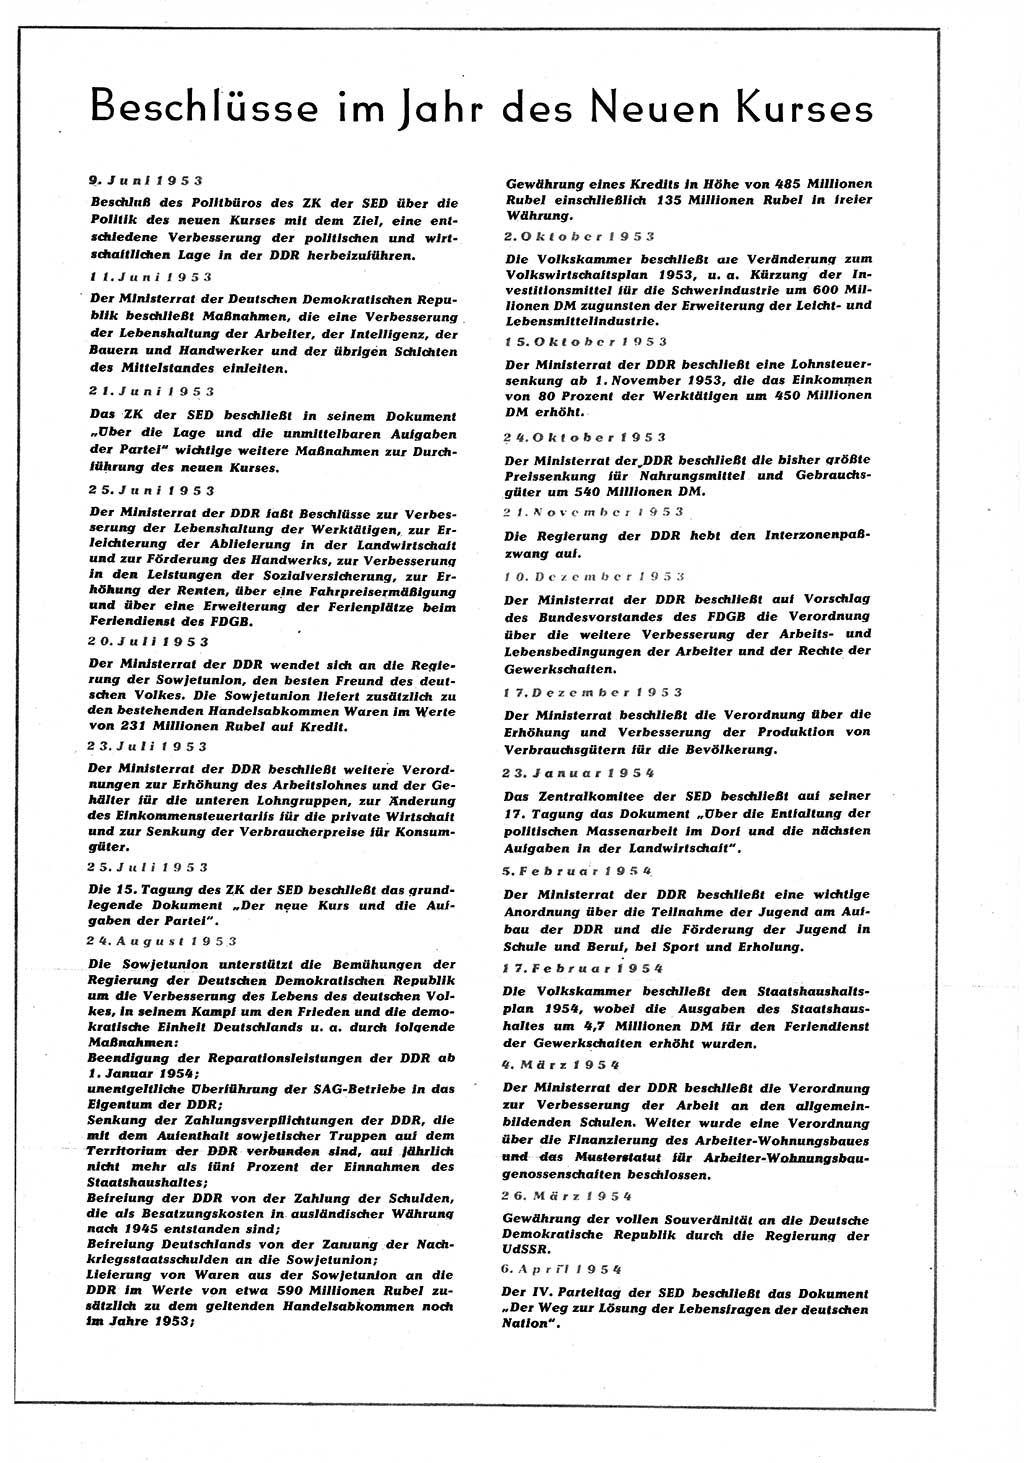 Neuer Weg (NW), Organ des Zentralkomitees (ZK) der SED (Sozialistische Einheitspartei Deutschlands) für alle Parteiarbeiter, 9. Jahrgang [Deutsche Demokratische Republik (DDR)] 1954, Heft 11/3 (NW ZK SED DDR 1954, H. 11/3)